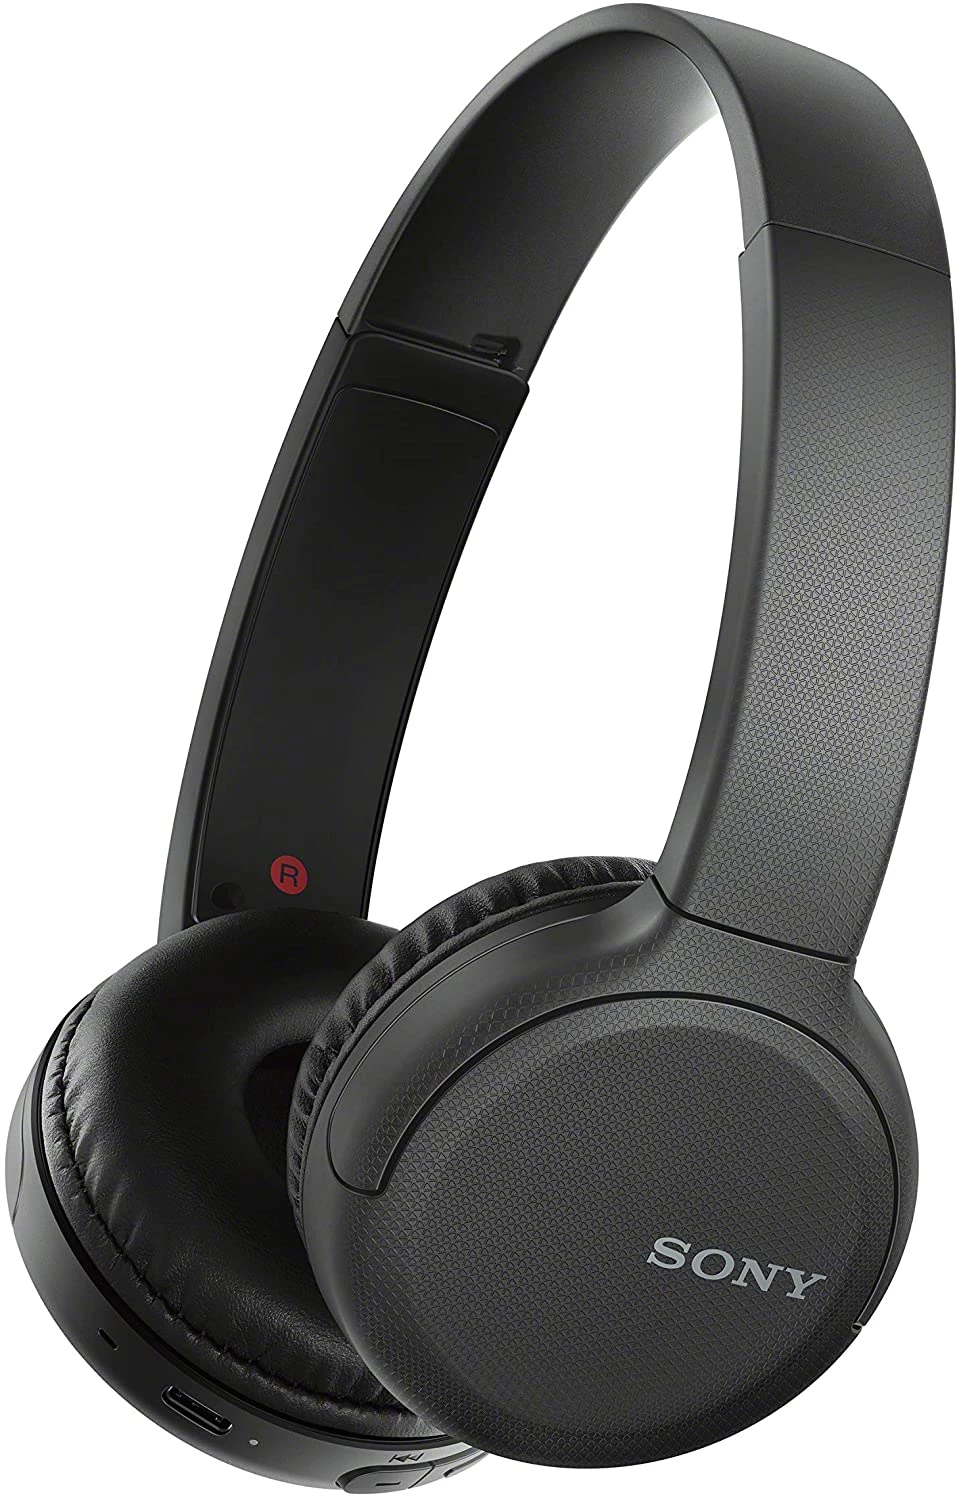 Sony WH-CH510 頭戴式無線藍芽耳機 (黑色)